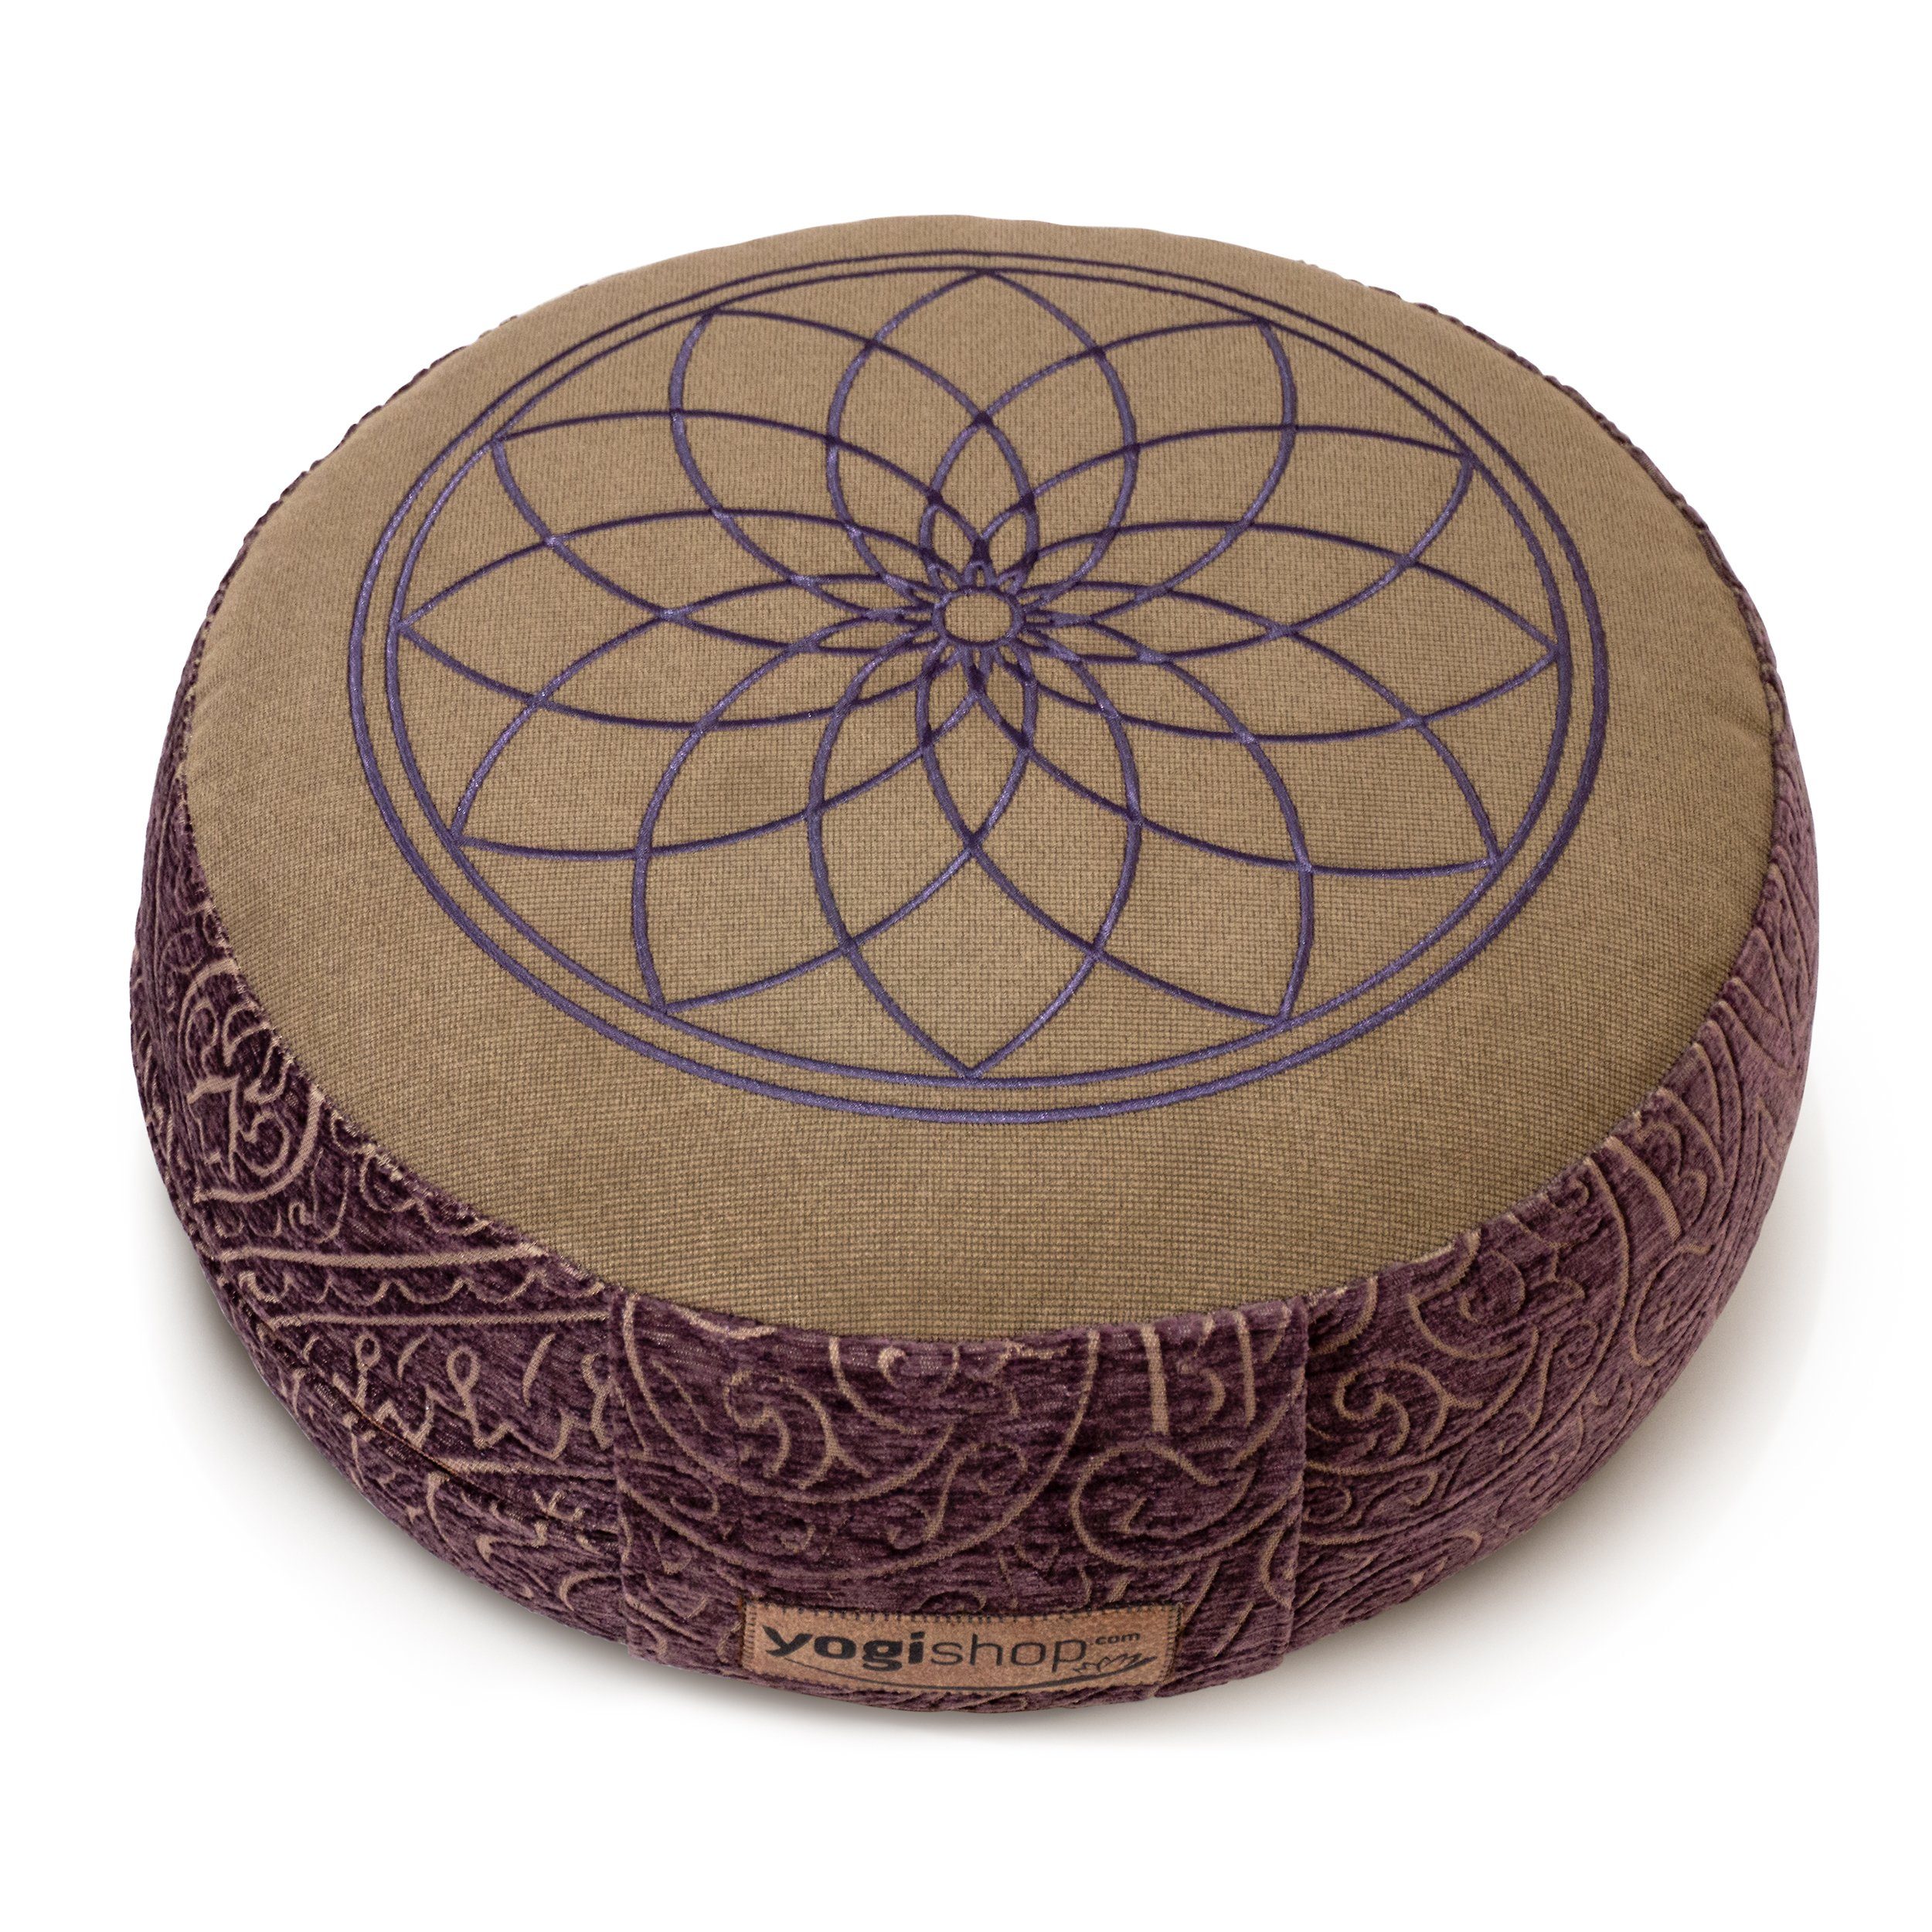 Yogishop Meditationskissen rund Meditationskissen violett "Sunflower". Hochwertiges Sunflower, Meditationskissen, Motiv-Stickerei mit